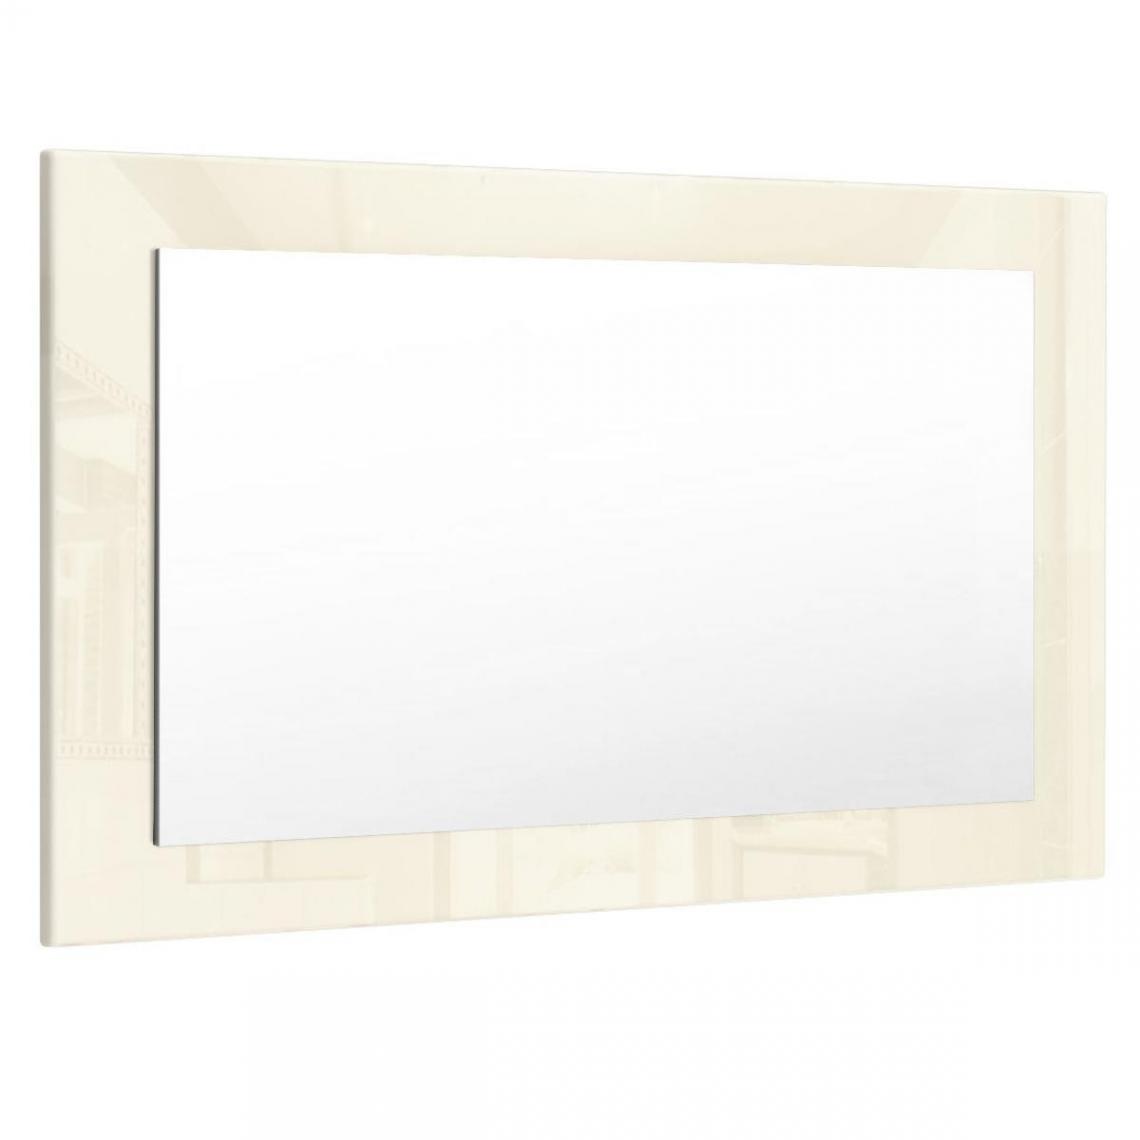 Mpc - Miroir crème brillant (HxLxP): 45 x 89 x 2 - Miroir de salle de bain